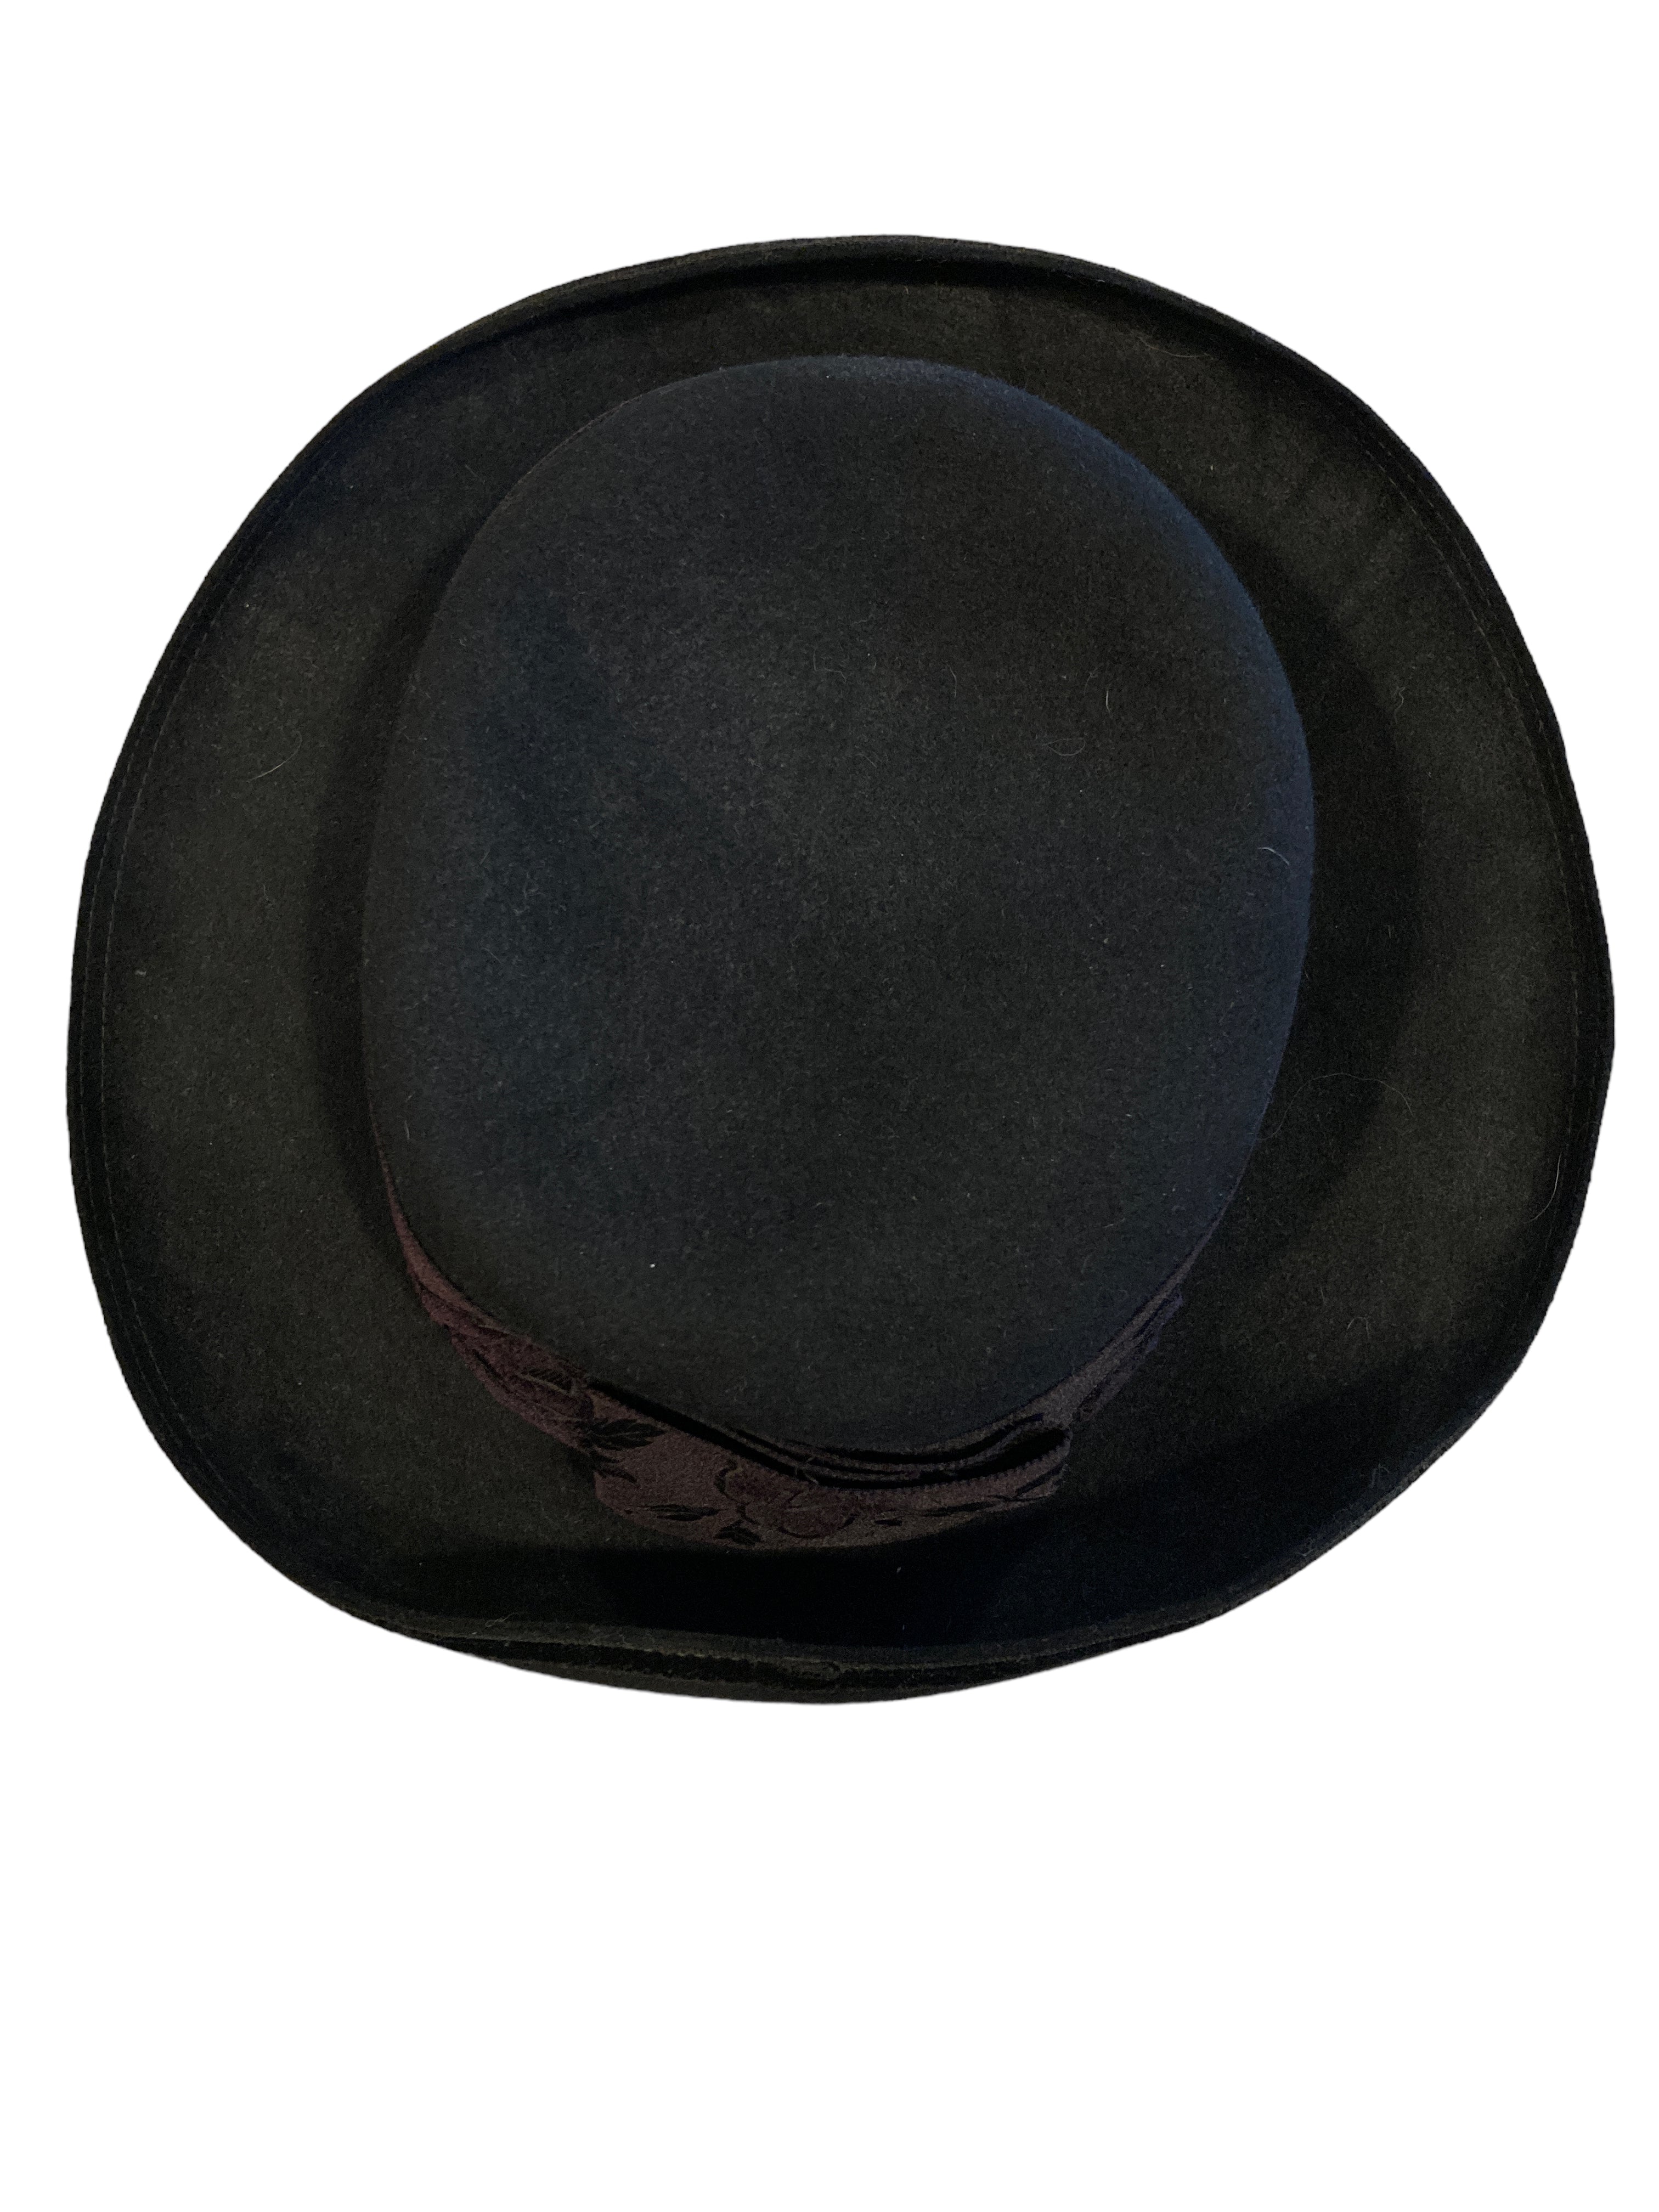 Vintage Reine Handarbeit Ischler " Hohensalzburg" Black Felt Hat